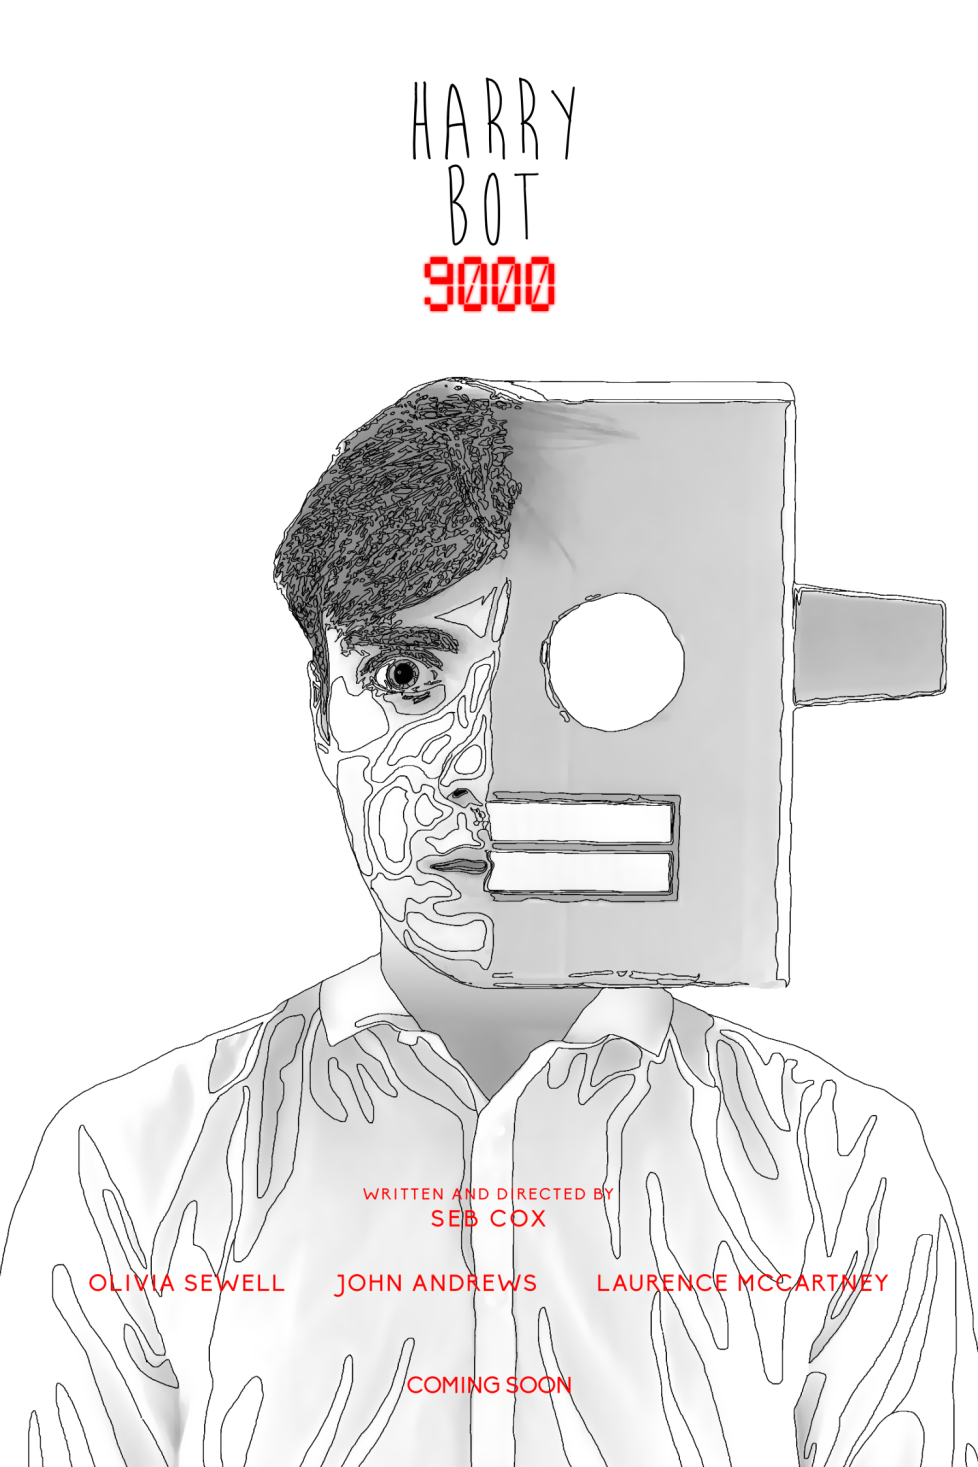 harry-bot-9000-teaser-poster-4.png